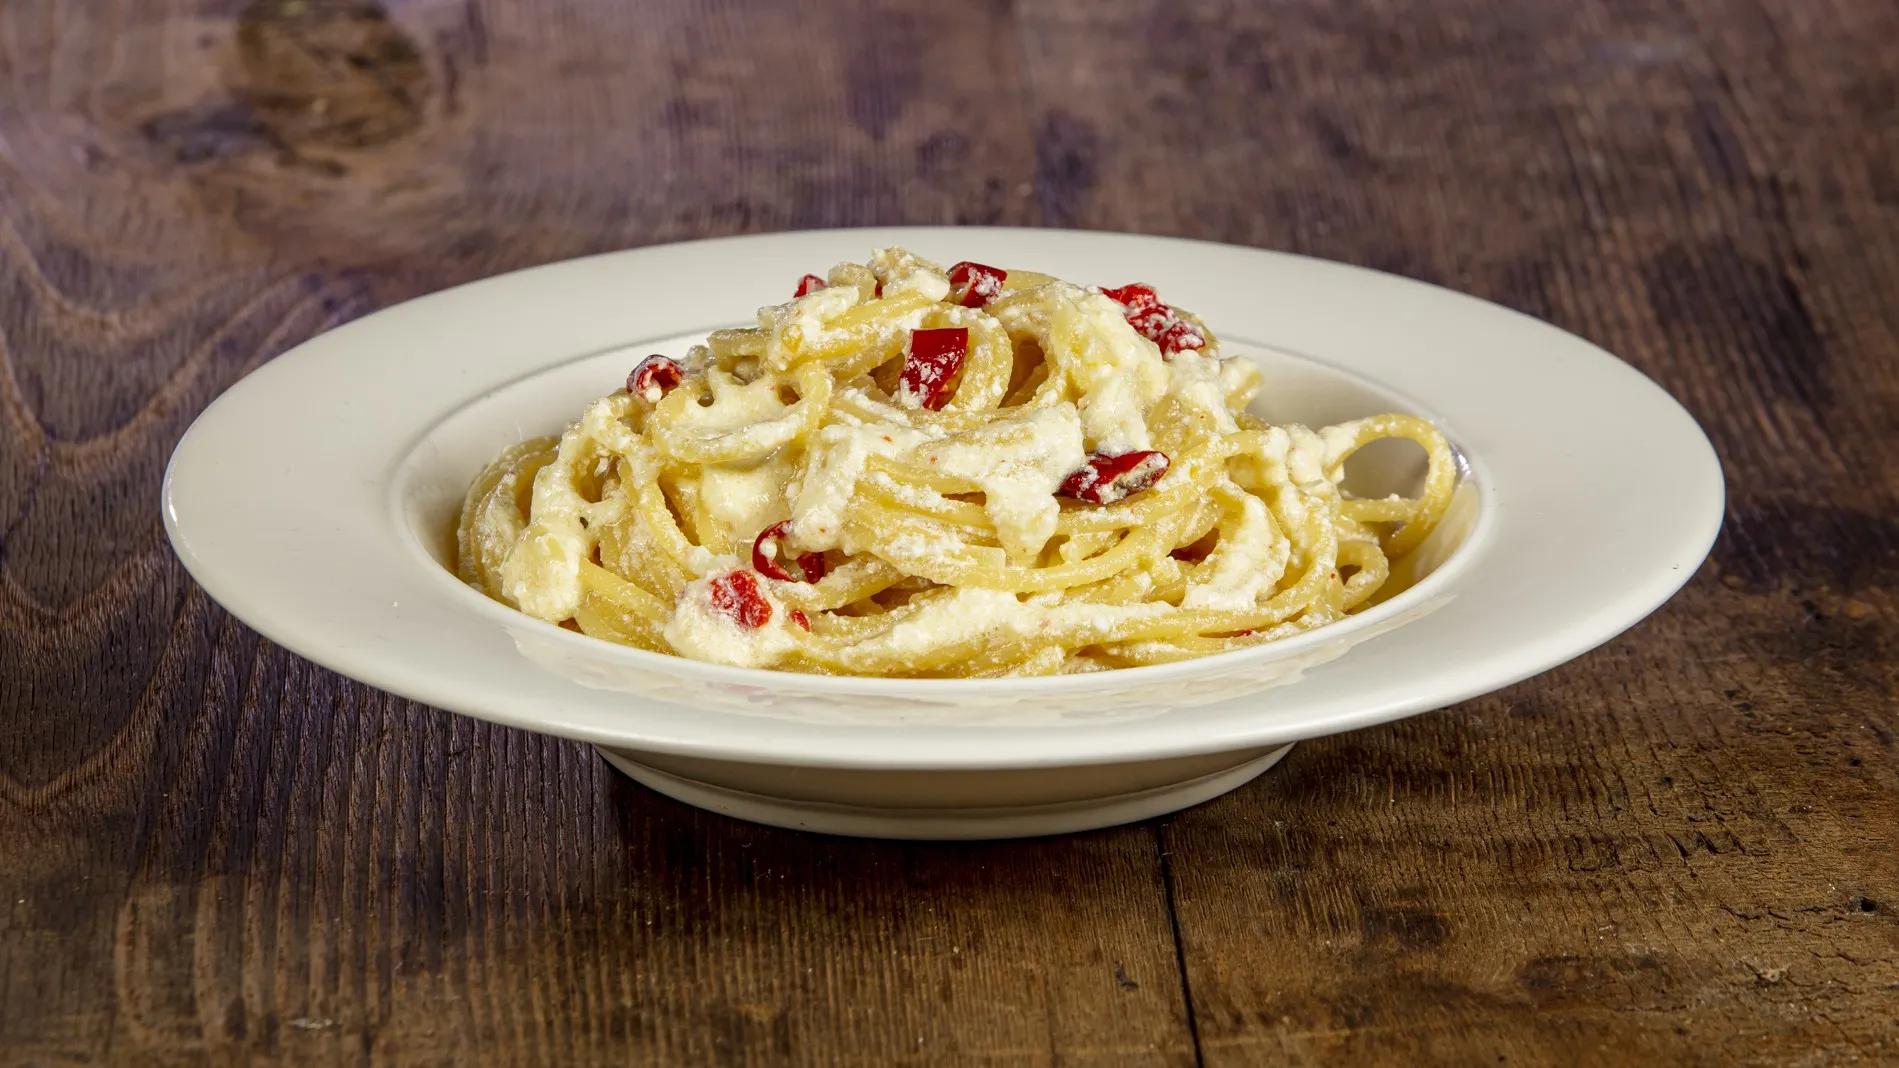 Spaghetti aglio olio e peperoncino con la ricotta - Ricette Casa Pappagallo